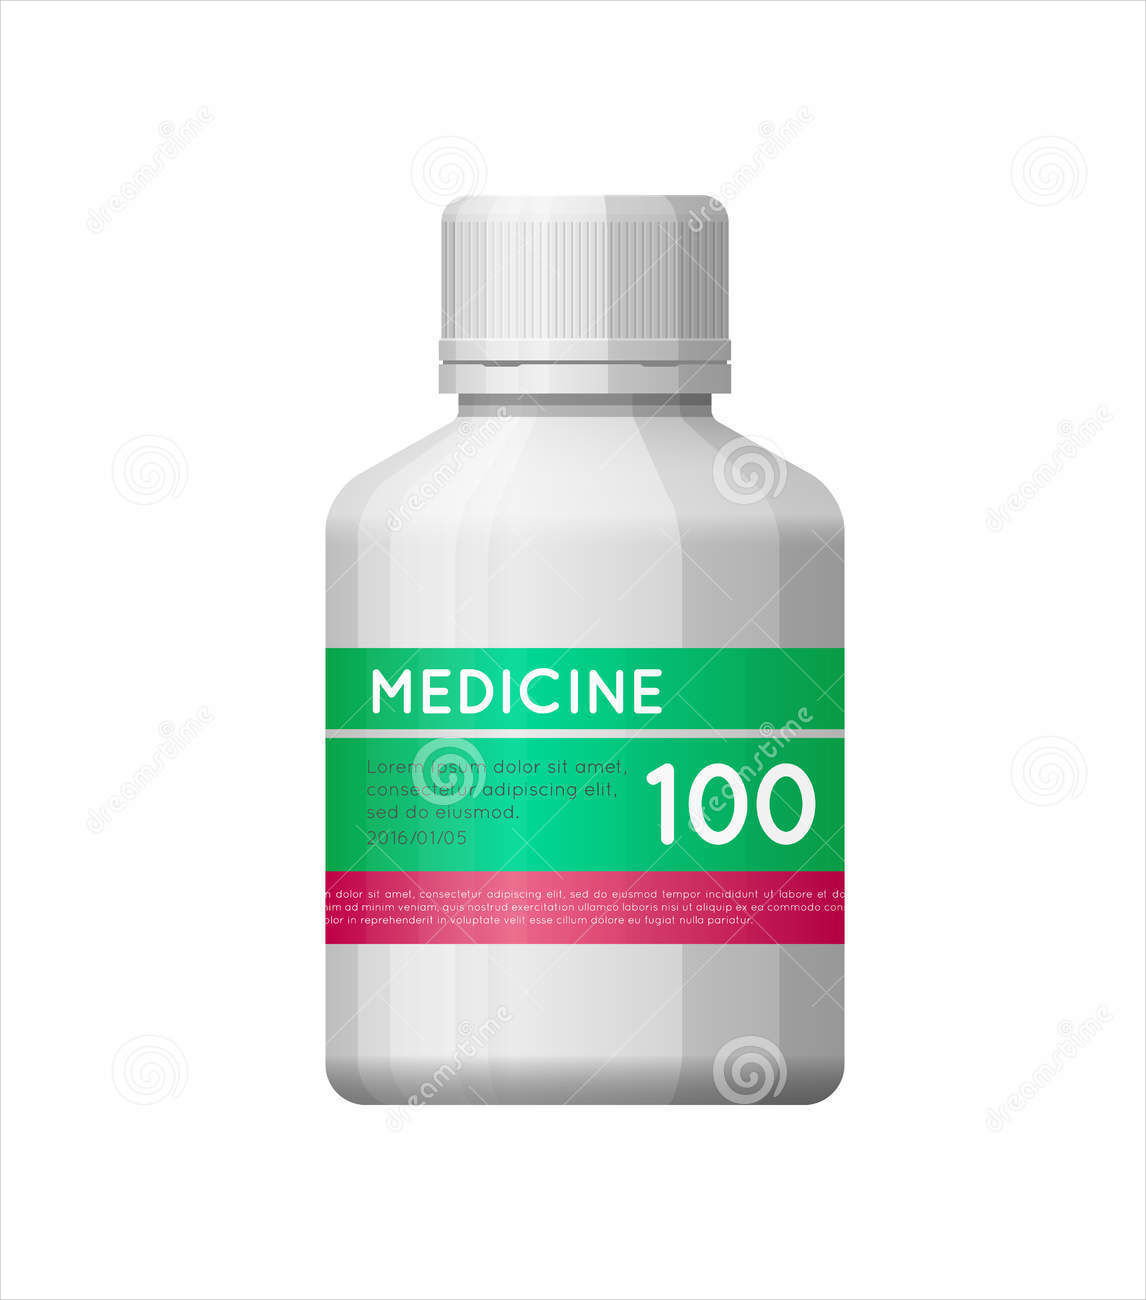 medicine bottle label